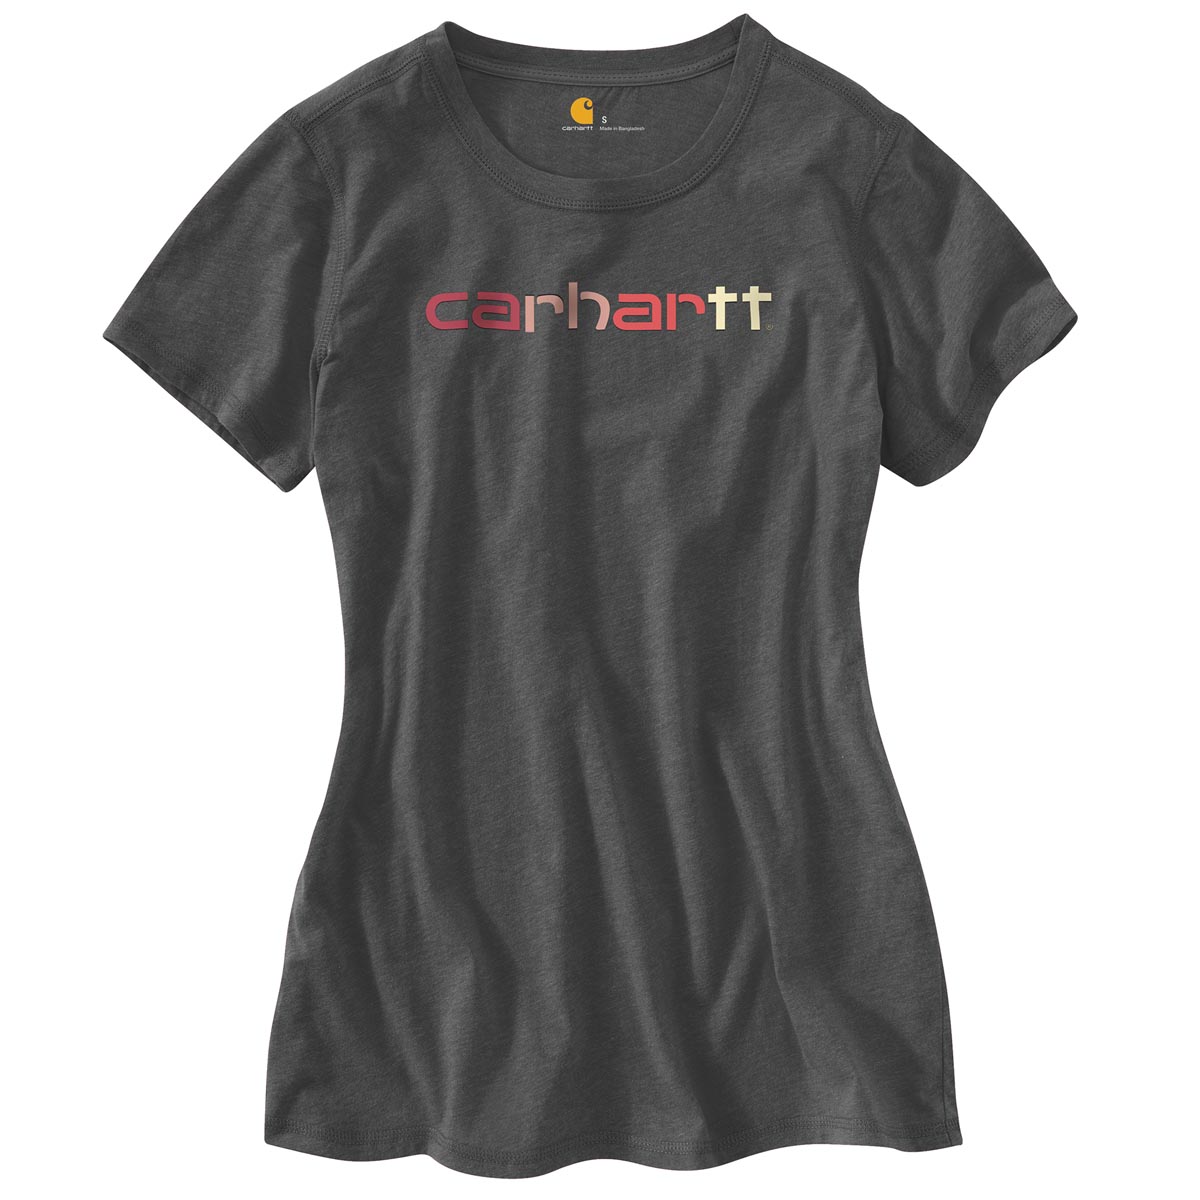 Carhartt Women's Signature T Shirt